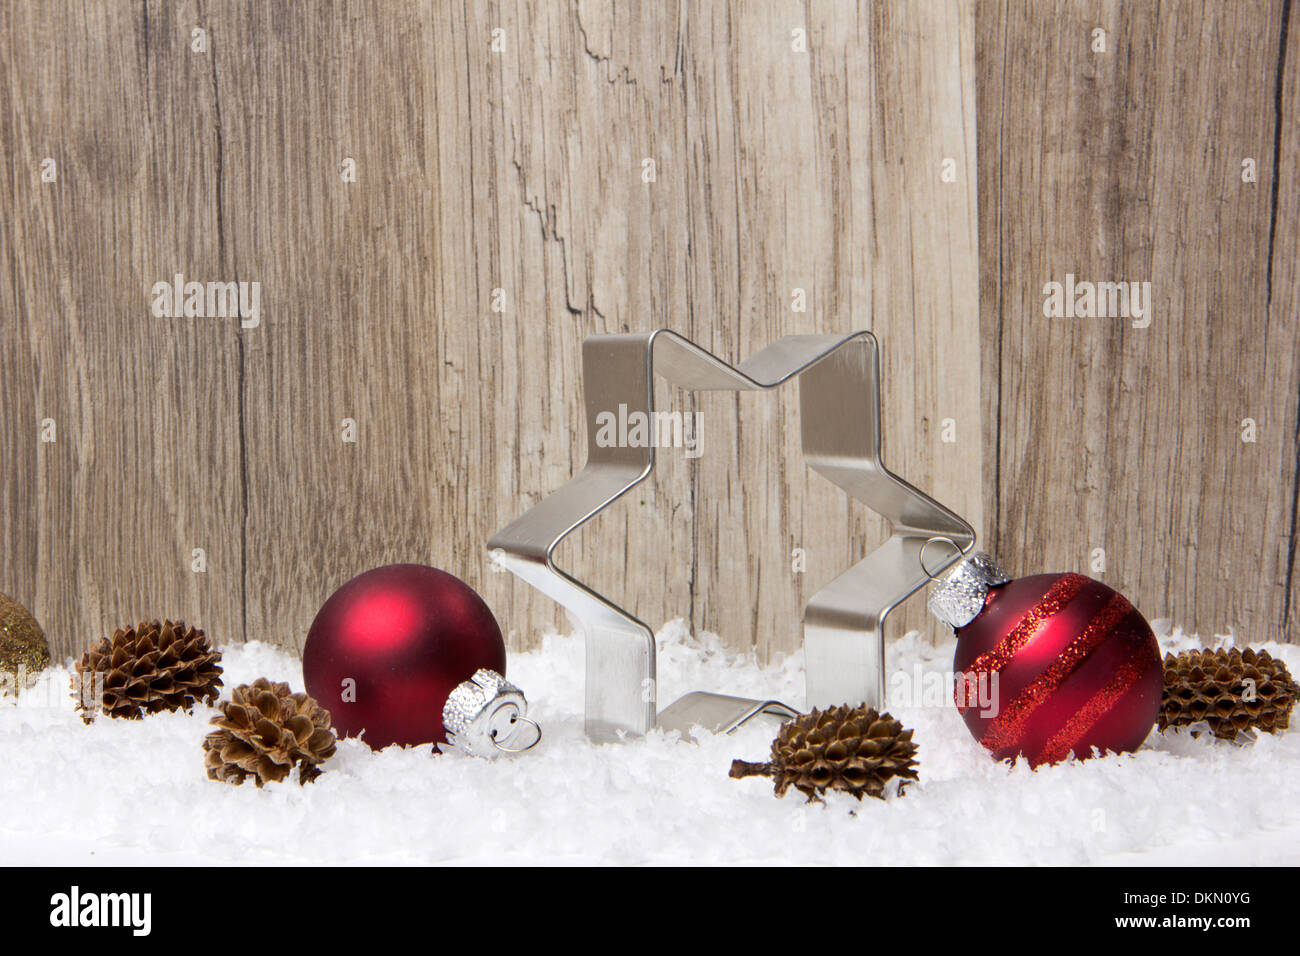 Weihnachts-Dekoration mit hölzernen Hintergrund, Schnee, Weihnachtskugeln rot, Weihnachtsstern und Tannenzapfen Stockfoto